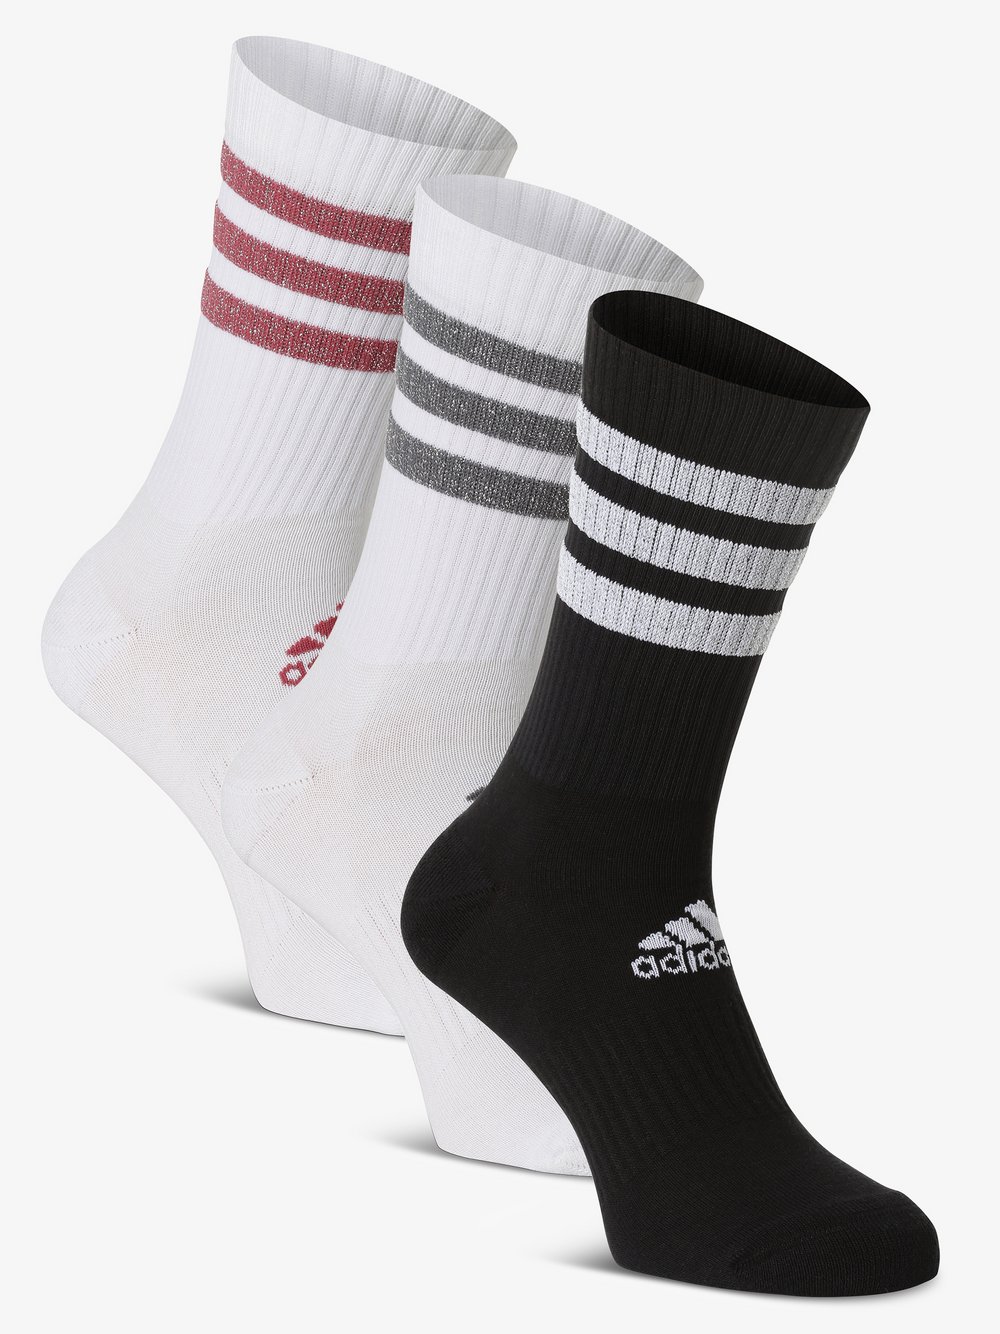 Adidas Originals - Skarpety damskie pakowane po 3 szt., czarny|biały